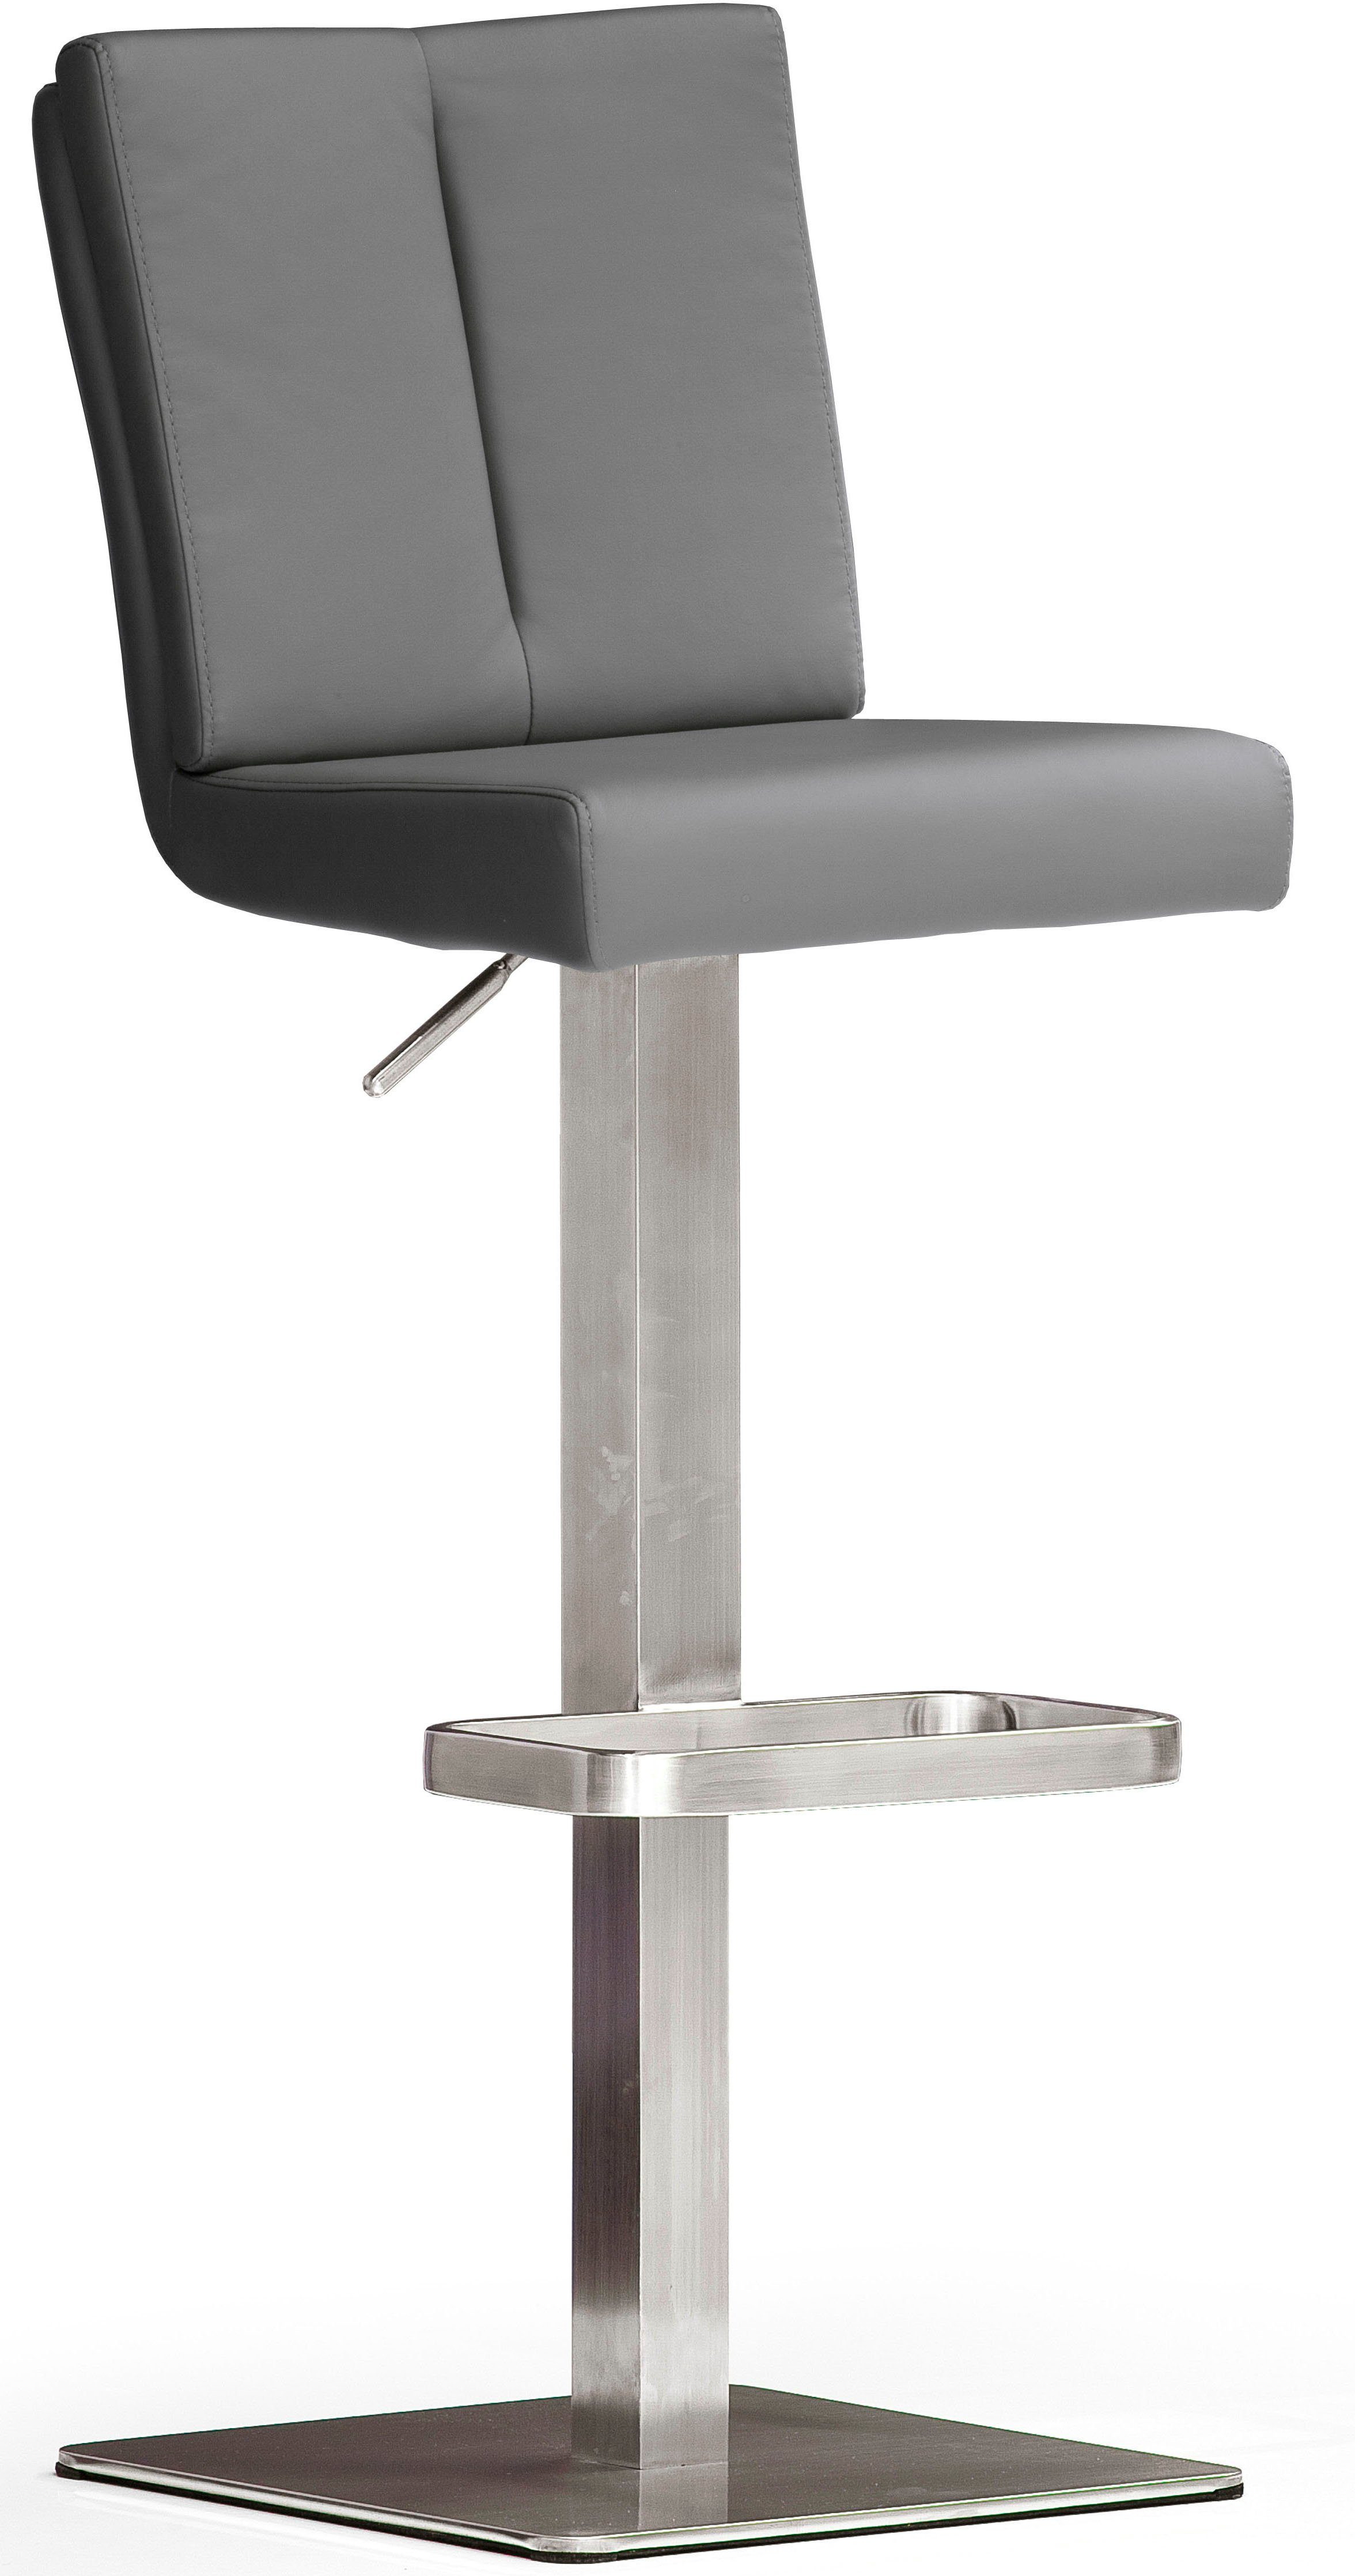 MCA grau furniture | BARBECOOL Bistrostuhl grau